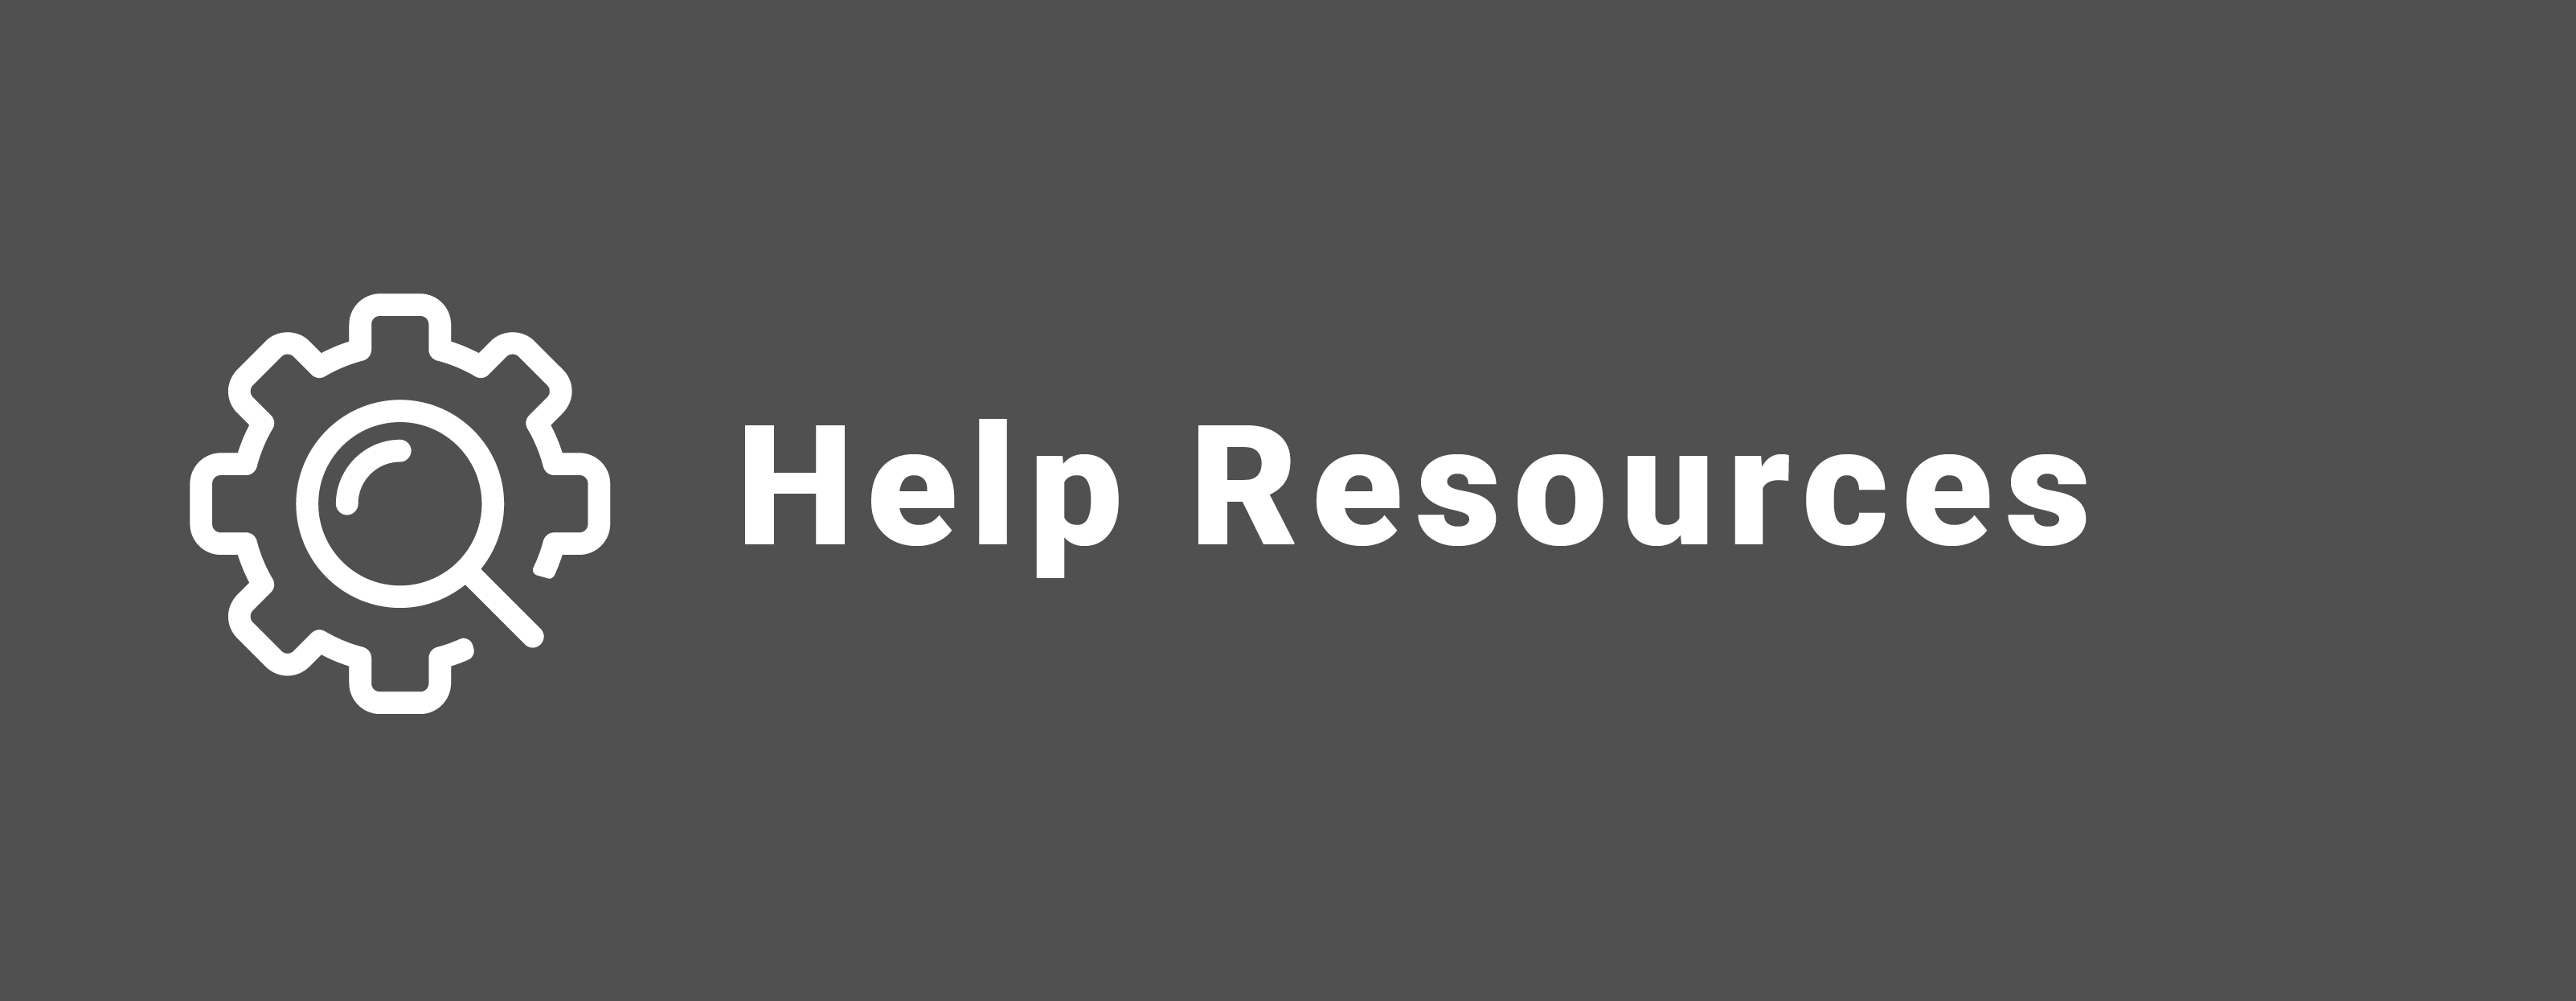 Help Resources